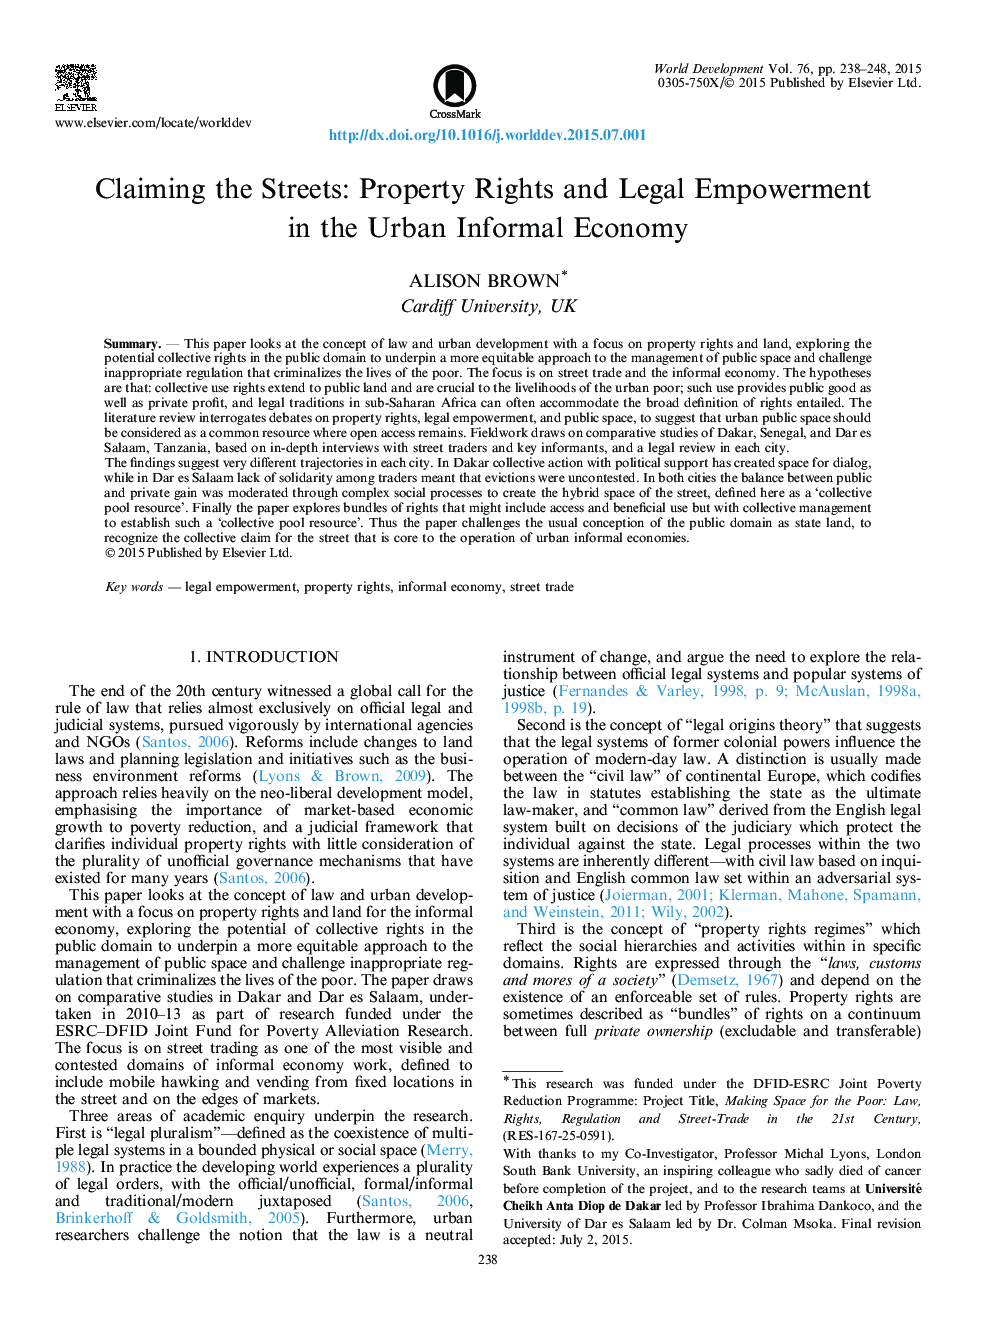 ادعای خیابانها: حقوق مالکیت و توانمندسازی قانونی در اقتصاد غیرانتفاعی شهری 